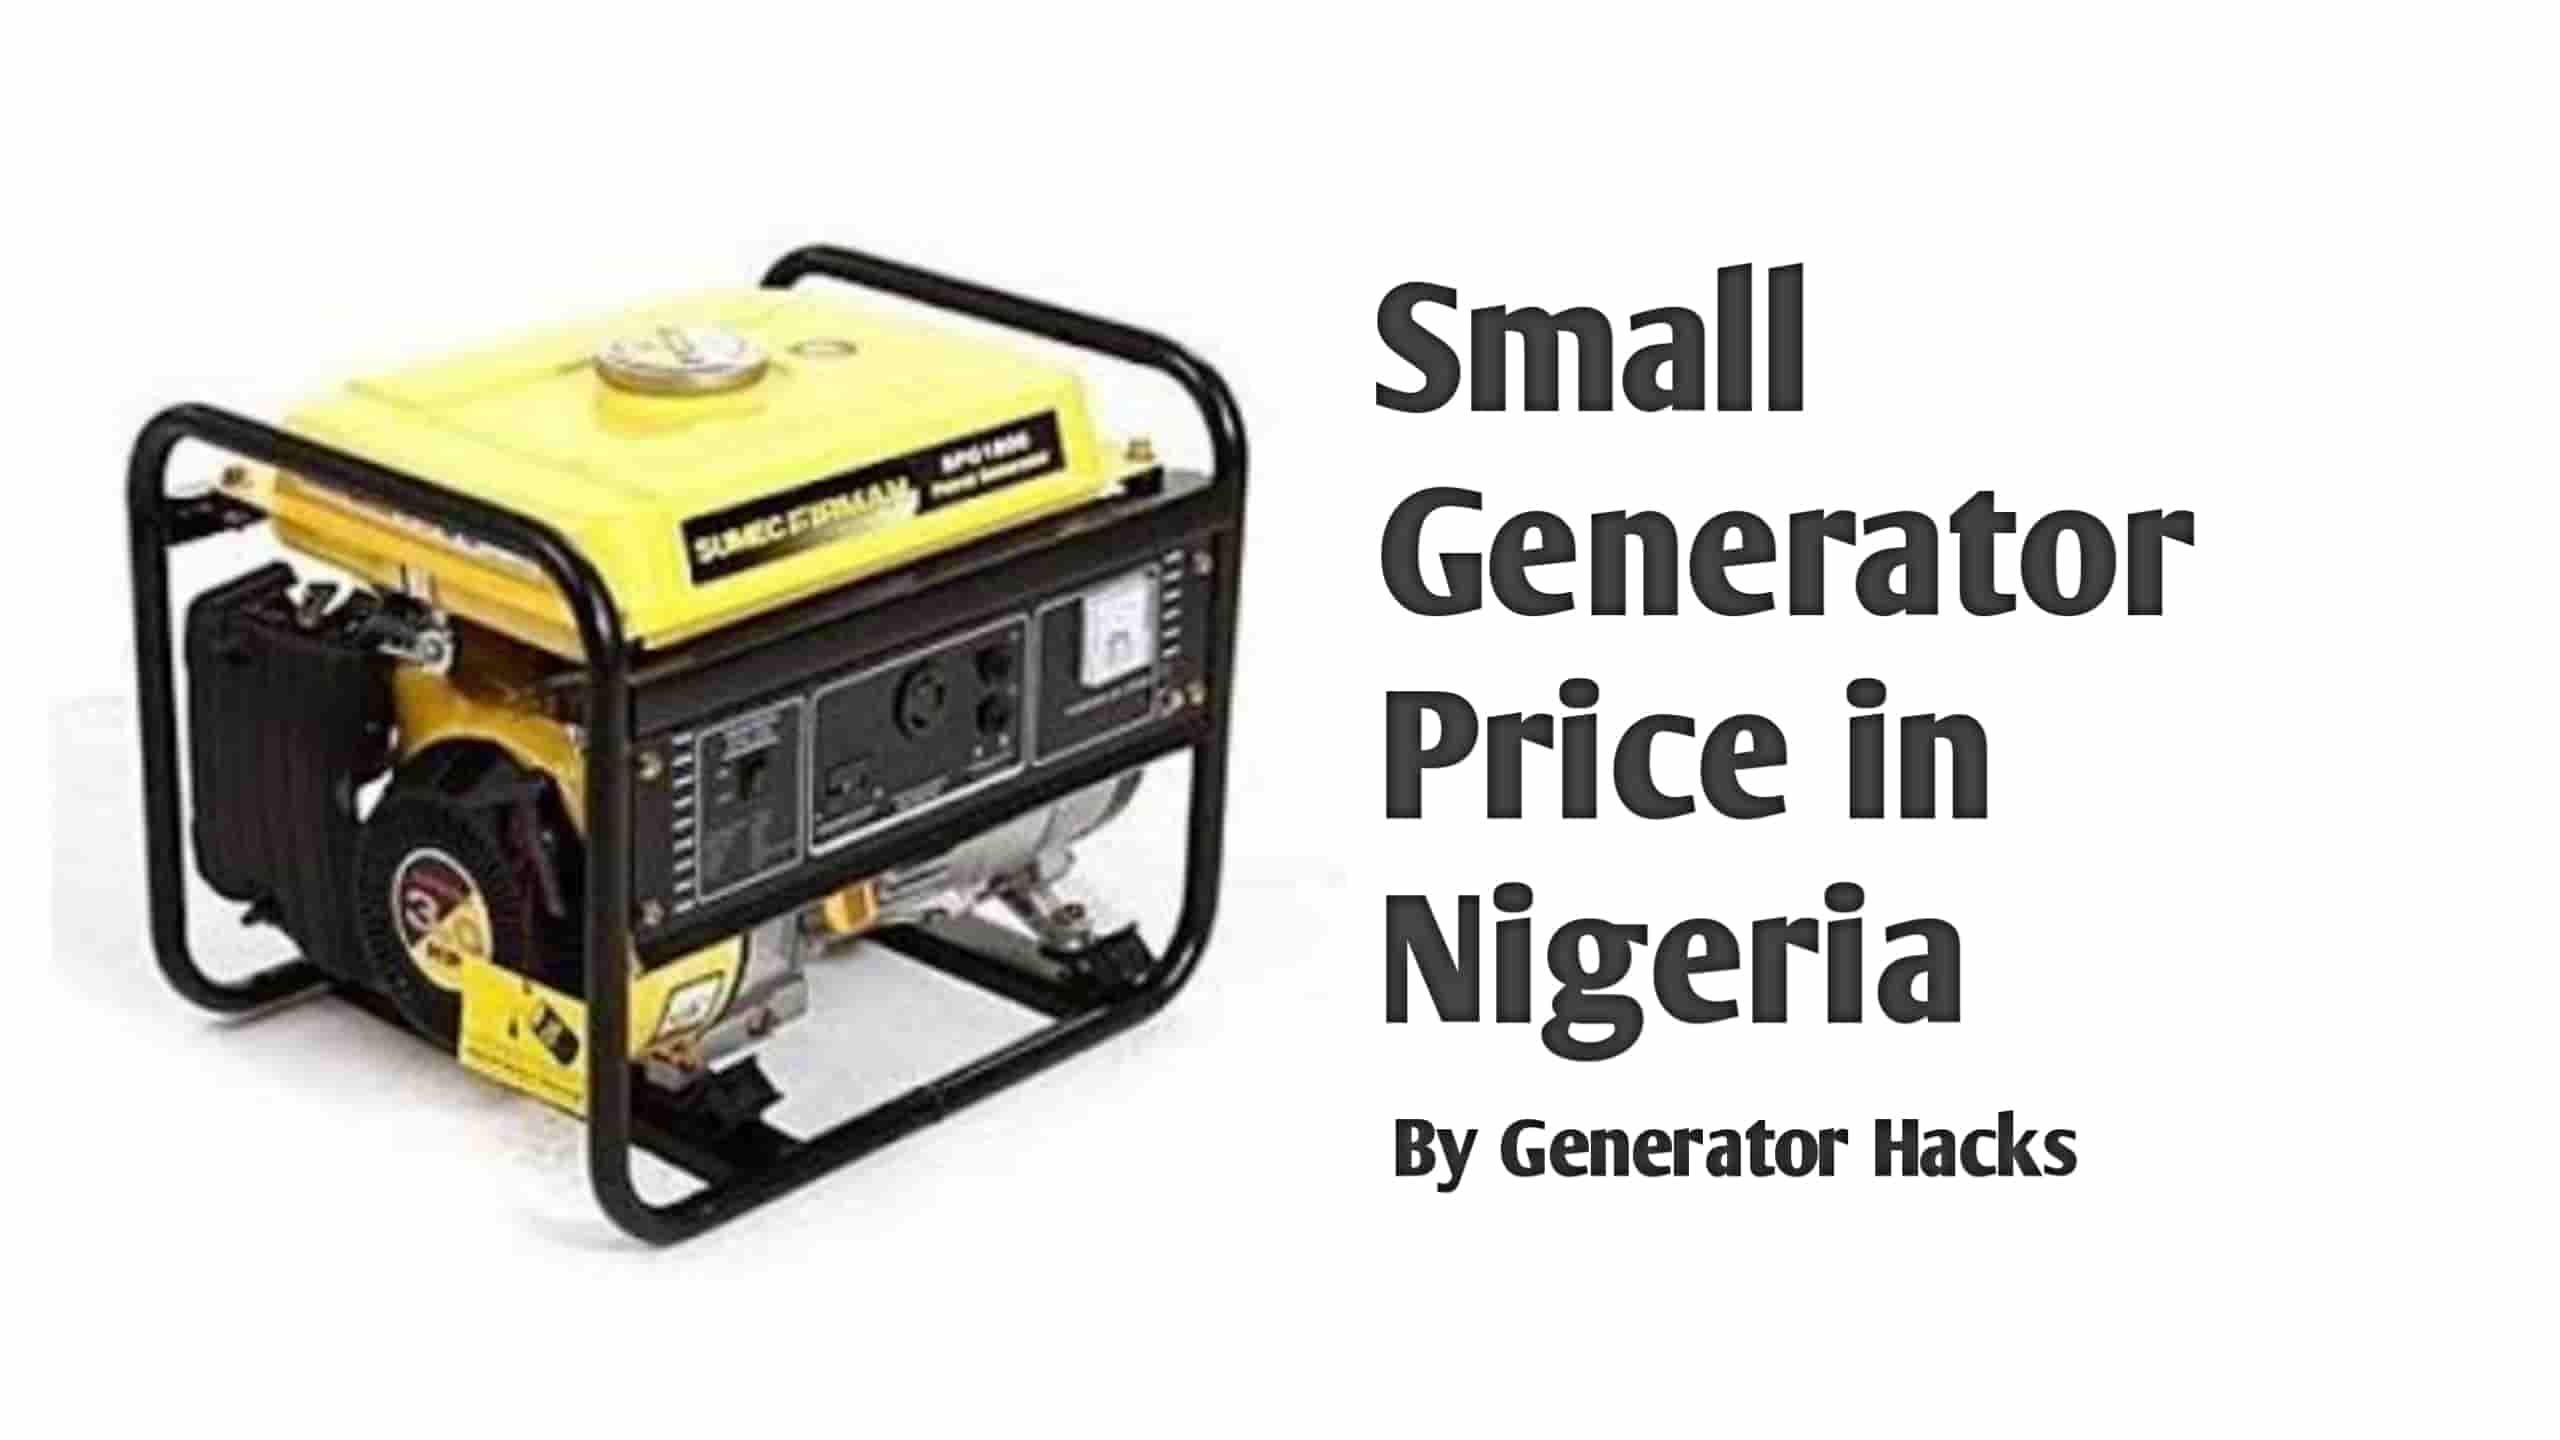 Small Generator Price in Nigeria,